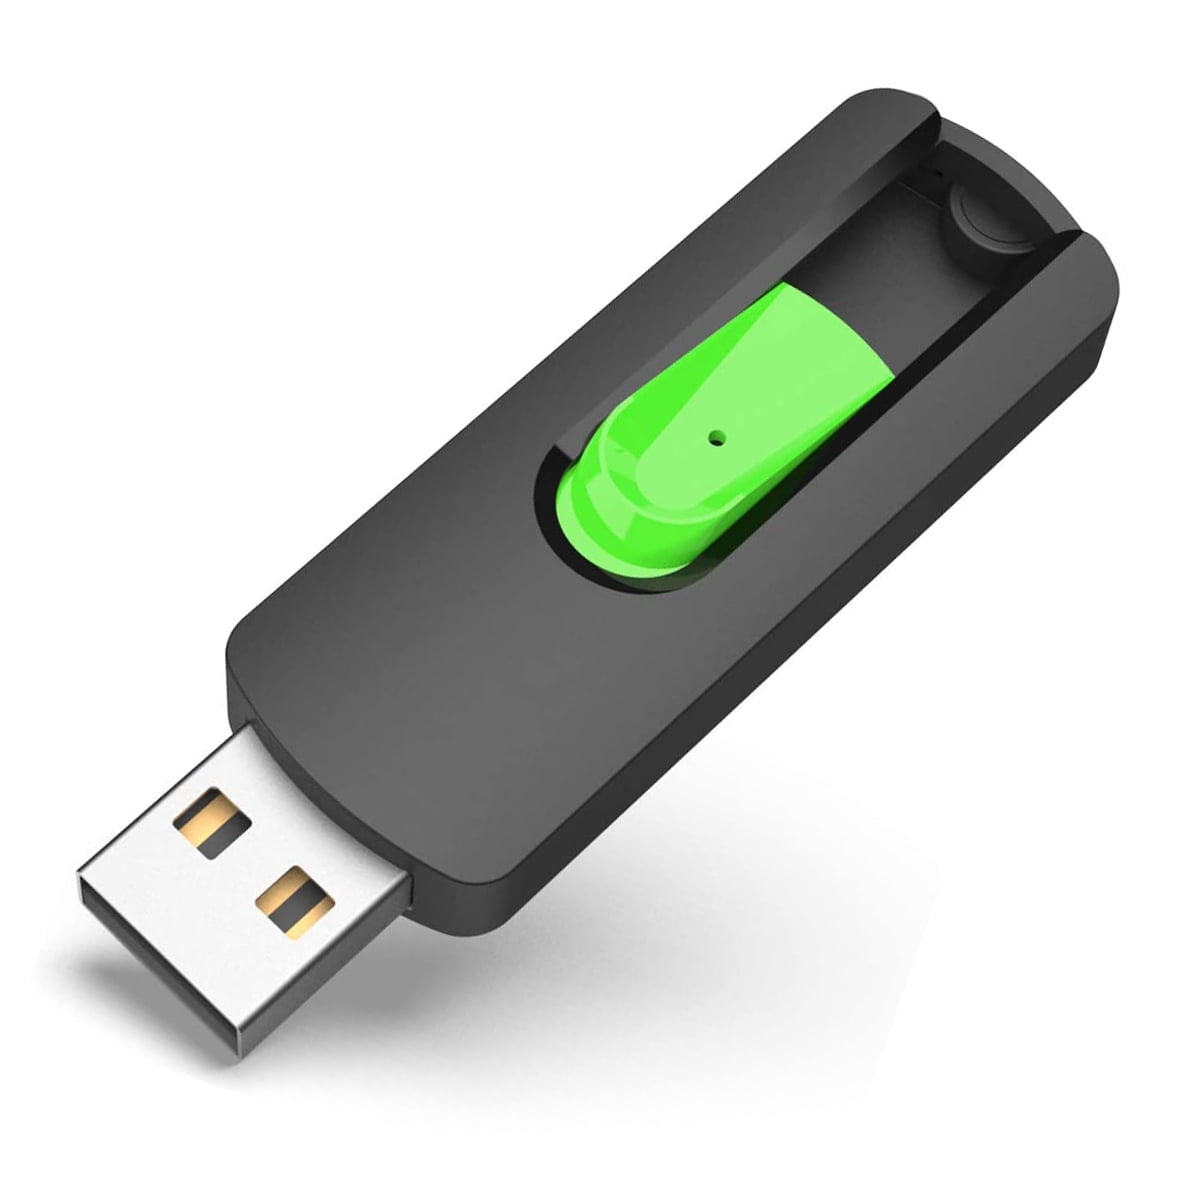 USB flash drive - Wikipedia